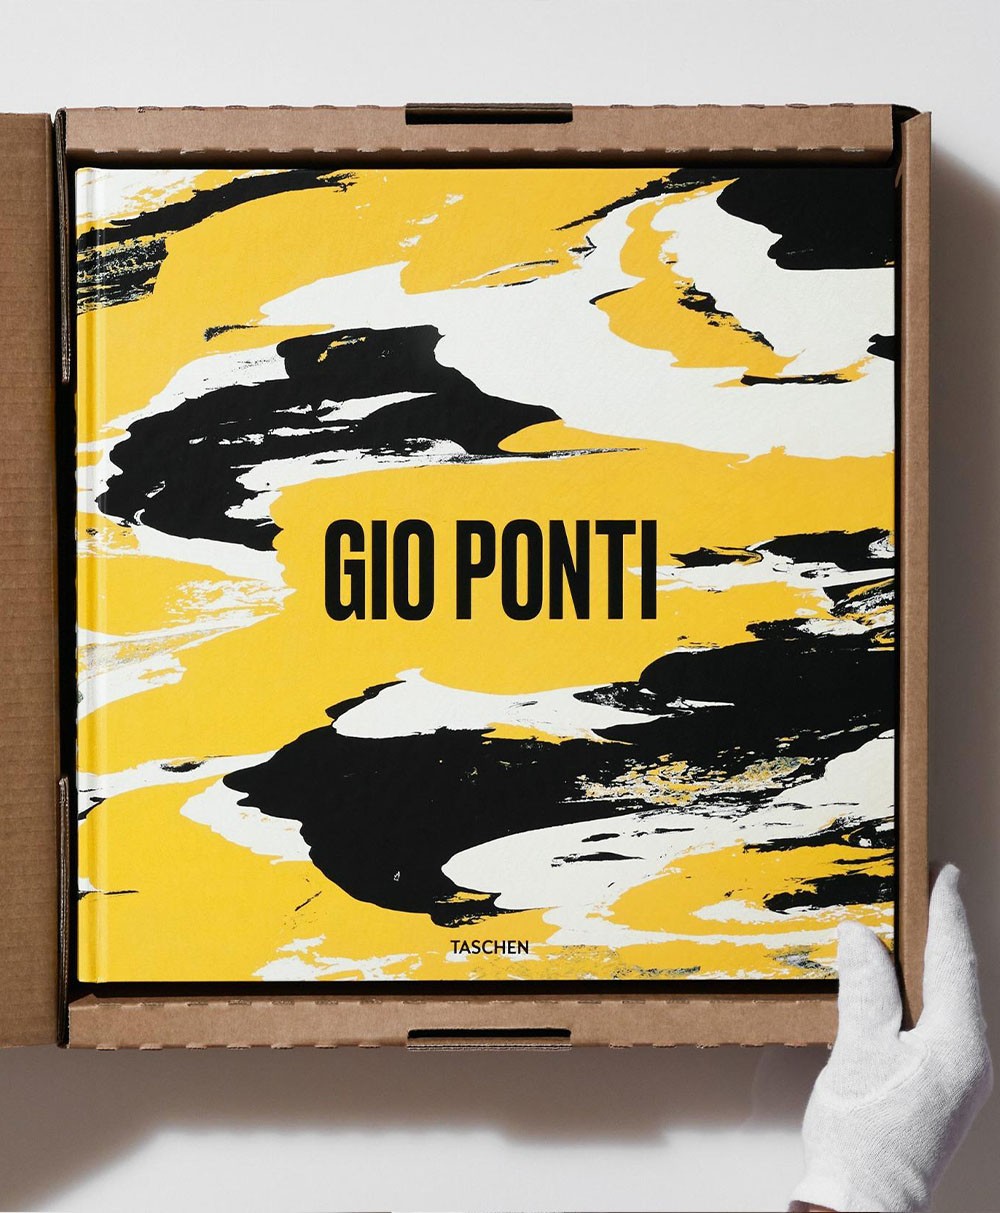 Hier ein Produktbild von dem Gio Ponti XL Bildband - RAUM concept store